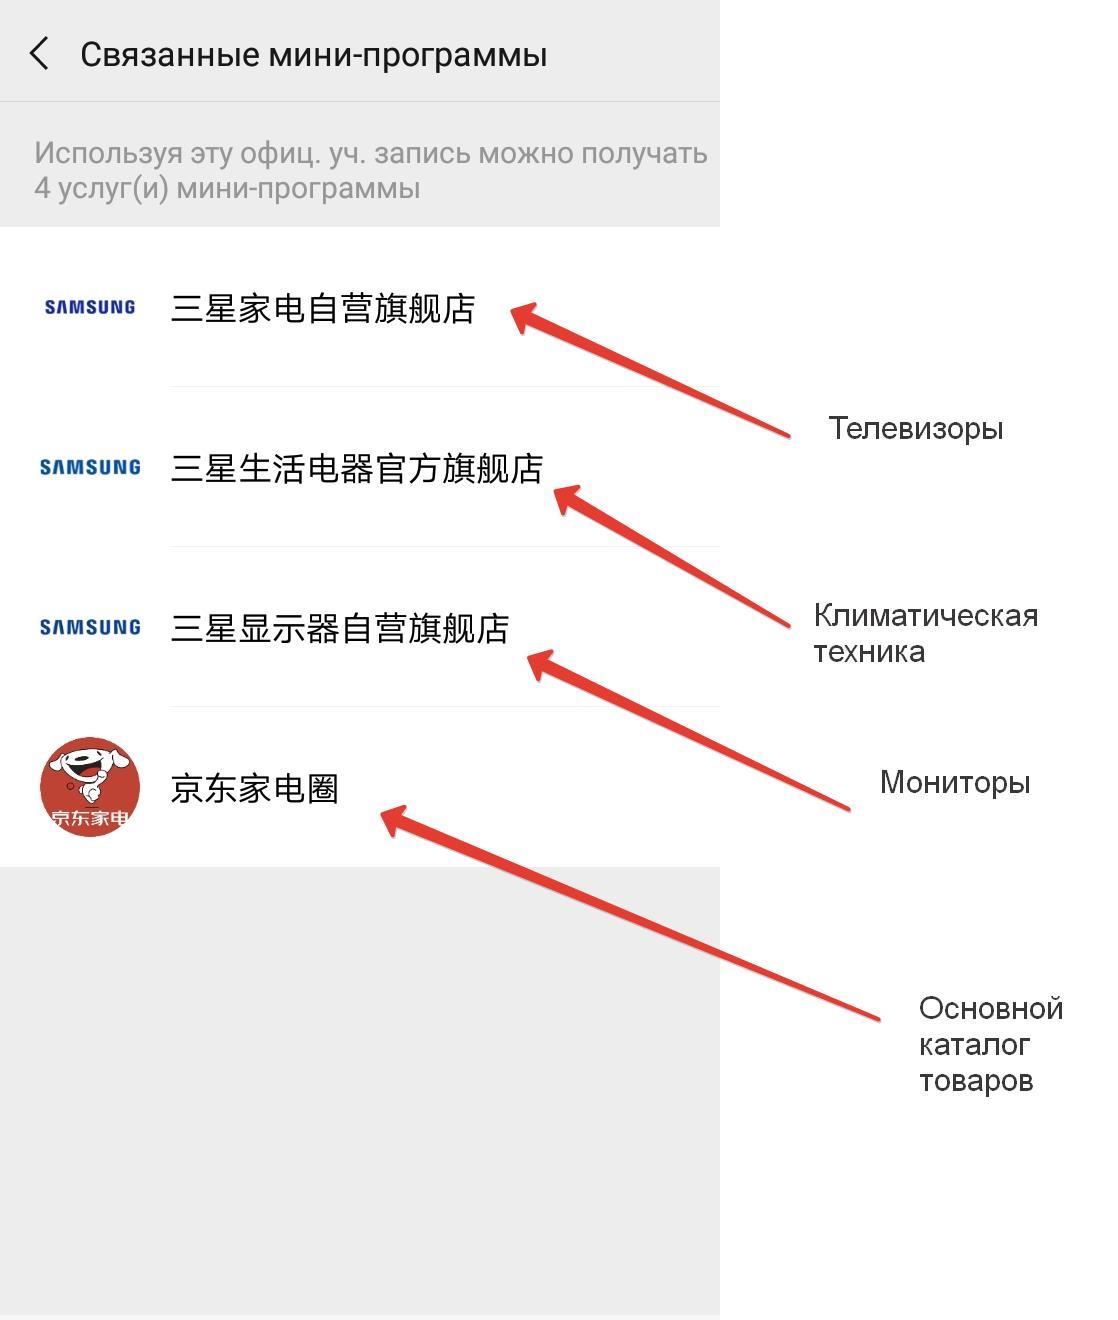 Мини-программы в аккаунте Samsung